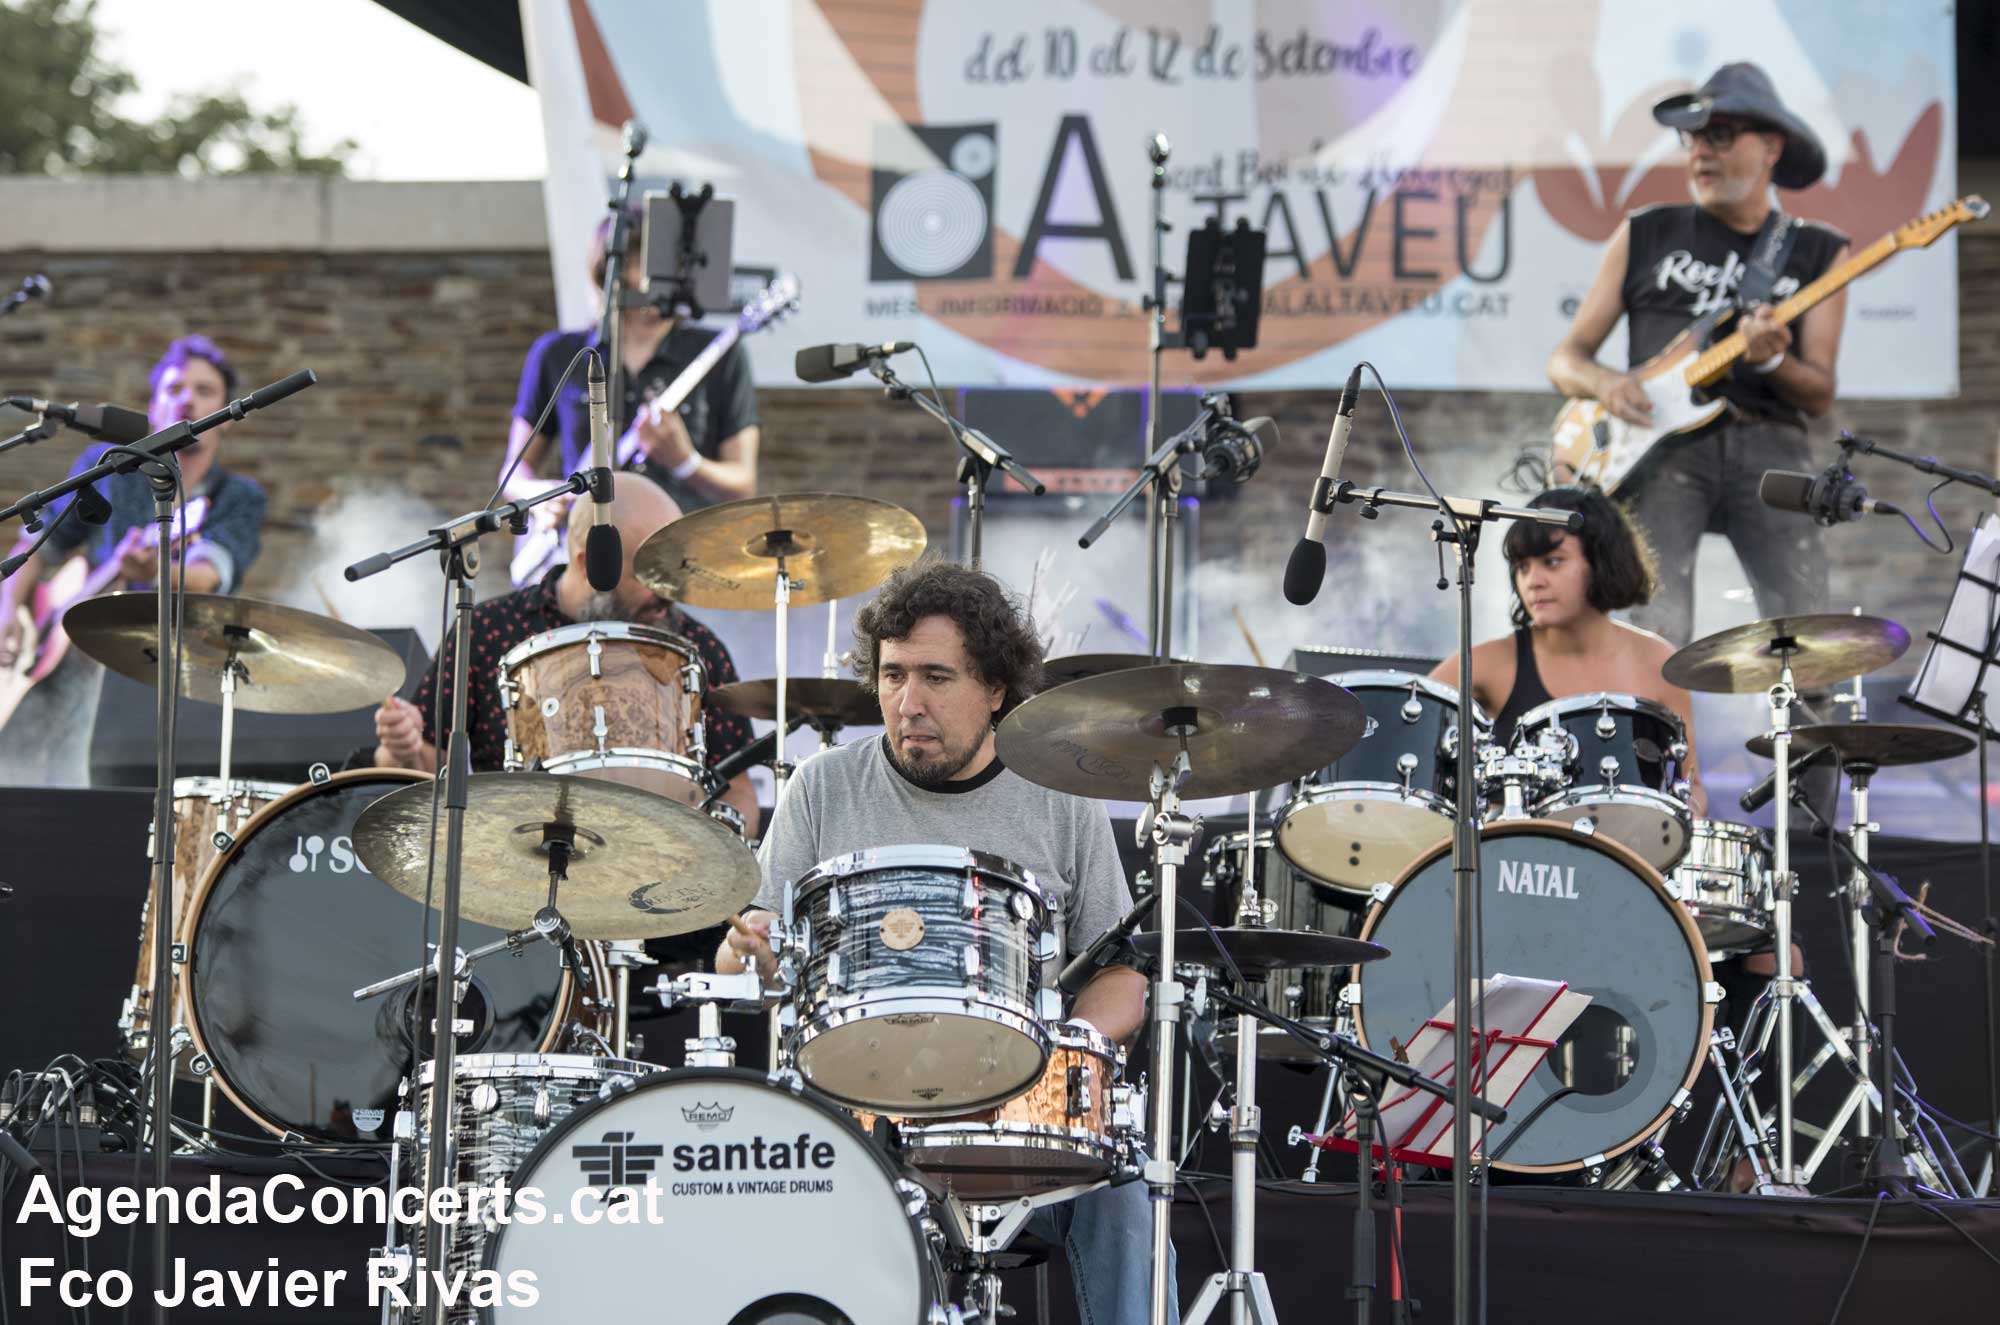 Drummers of Altaveu, espectacle propi del Festival Altaveu 2021.